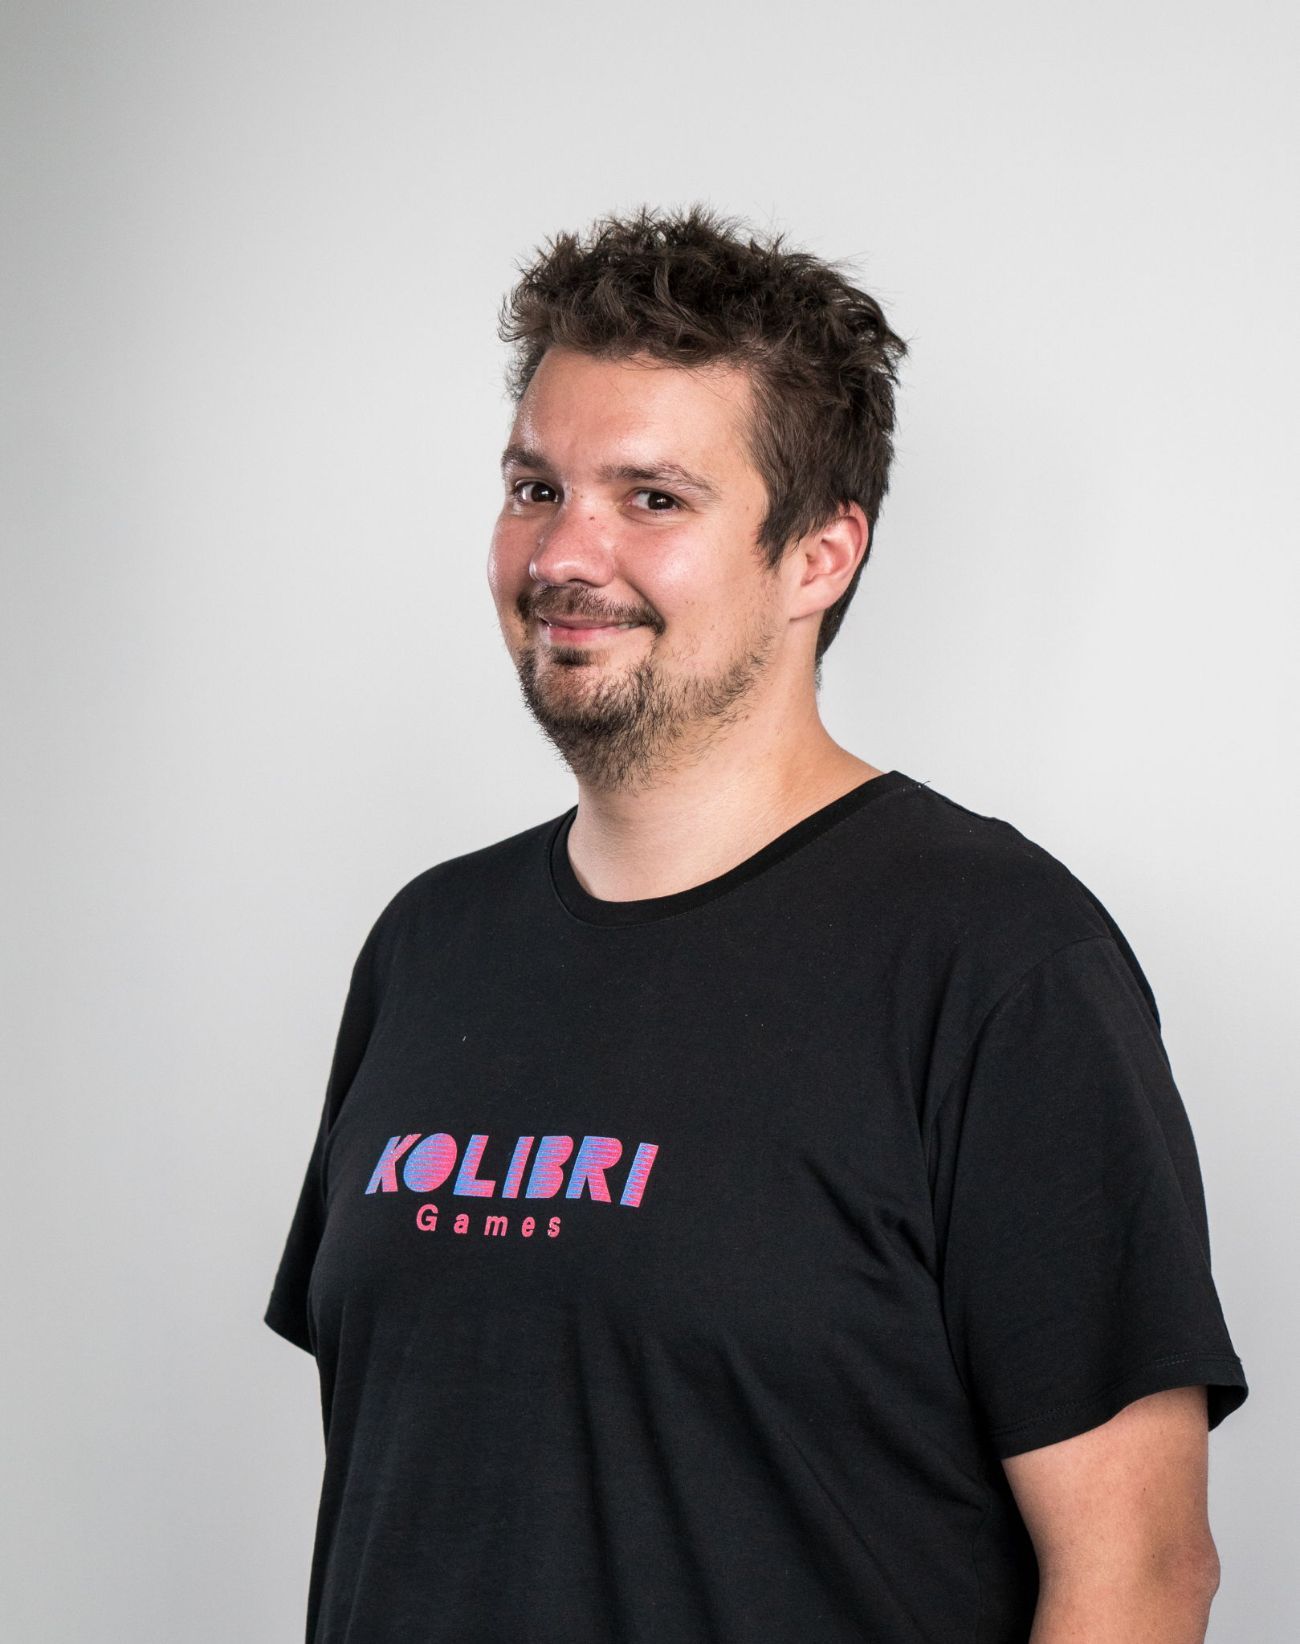 Daniel Stammler ist einer der Gründer von Kolibri Games